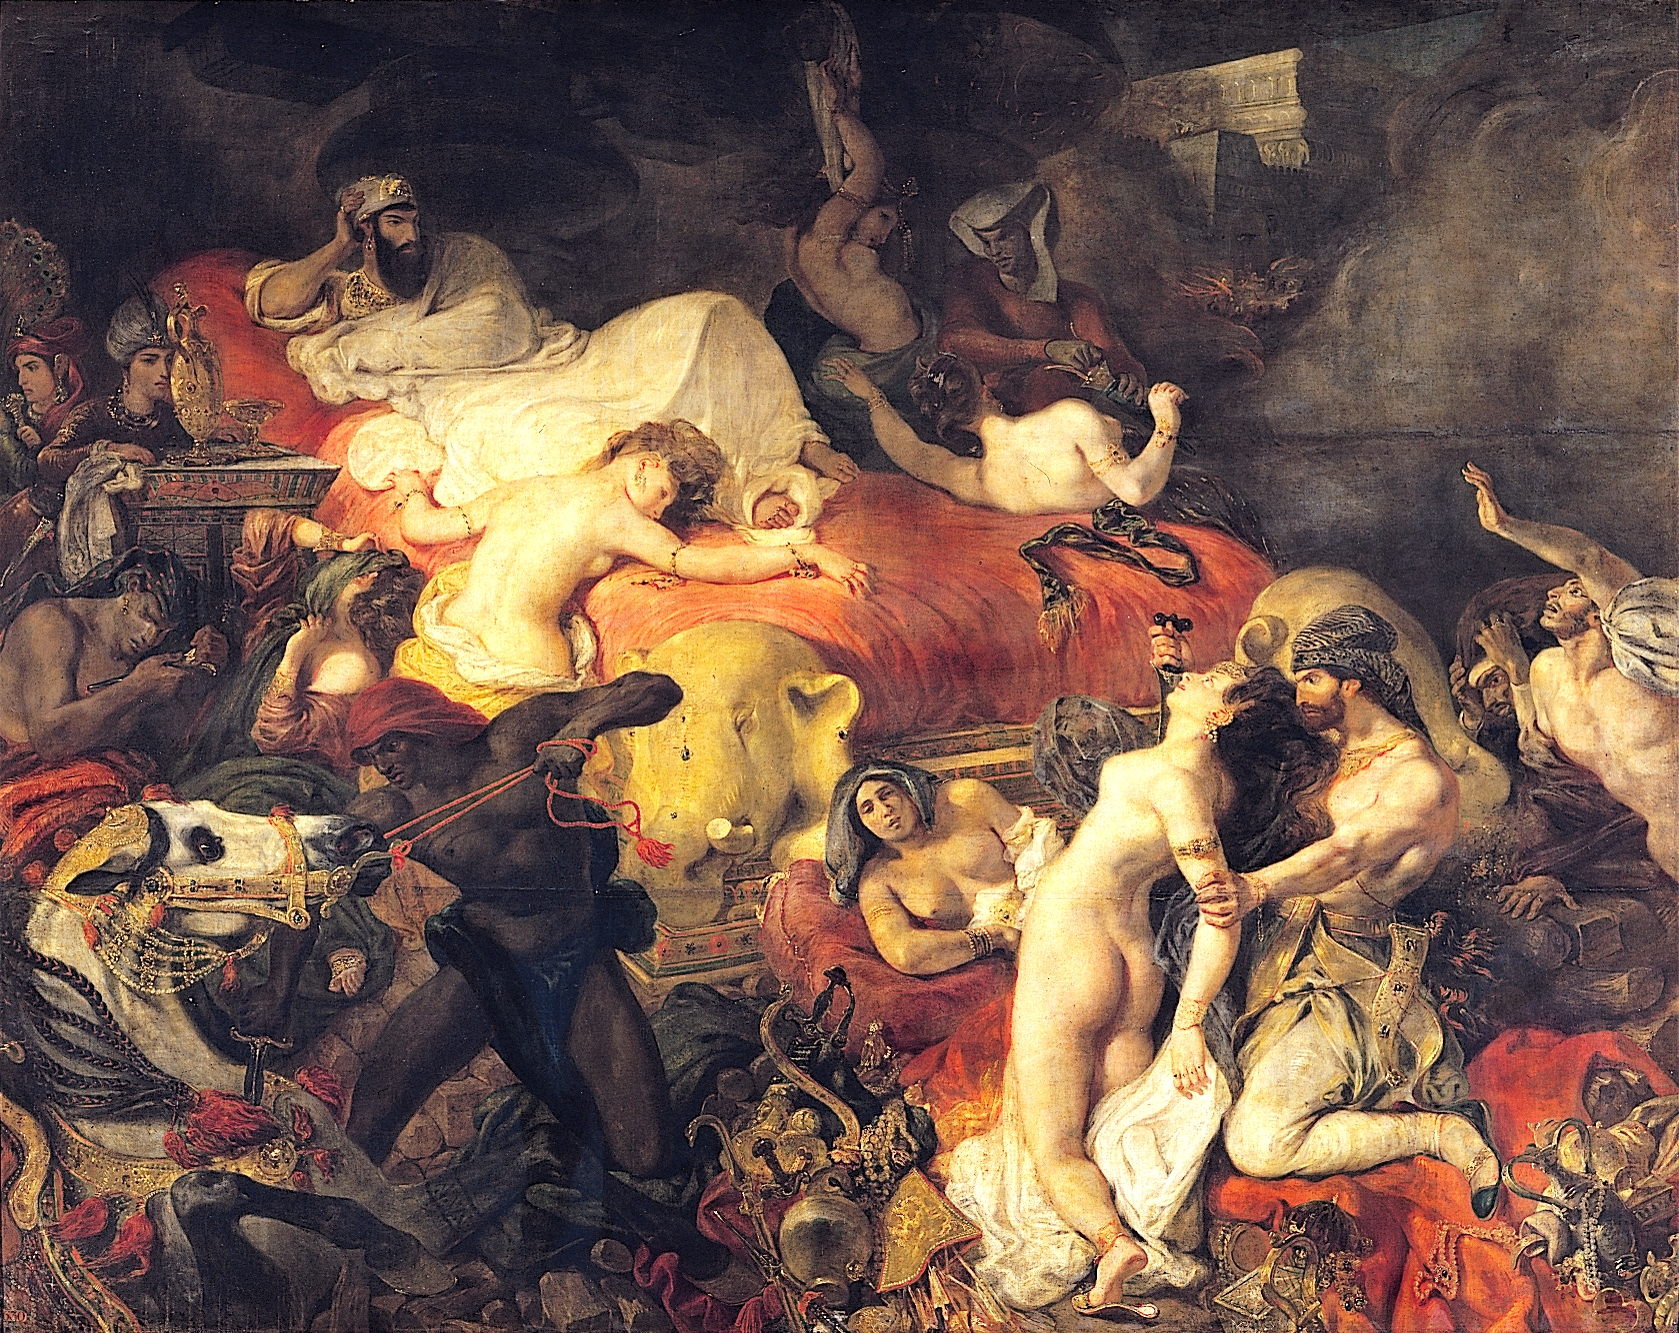 Death of Sardanapalus by Eugène Delacroix - 1827 - 392 x 496 cm Musée du Louvre